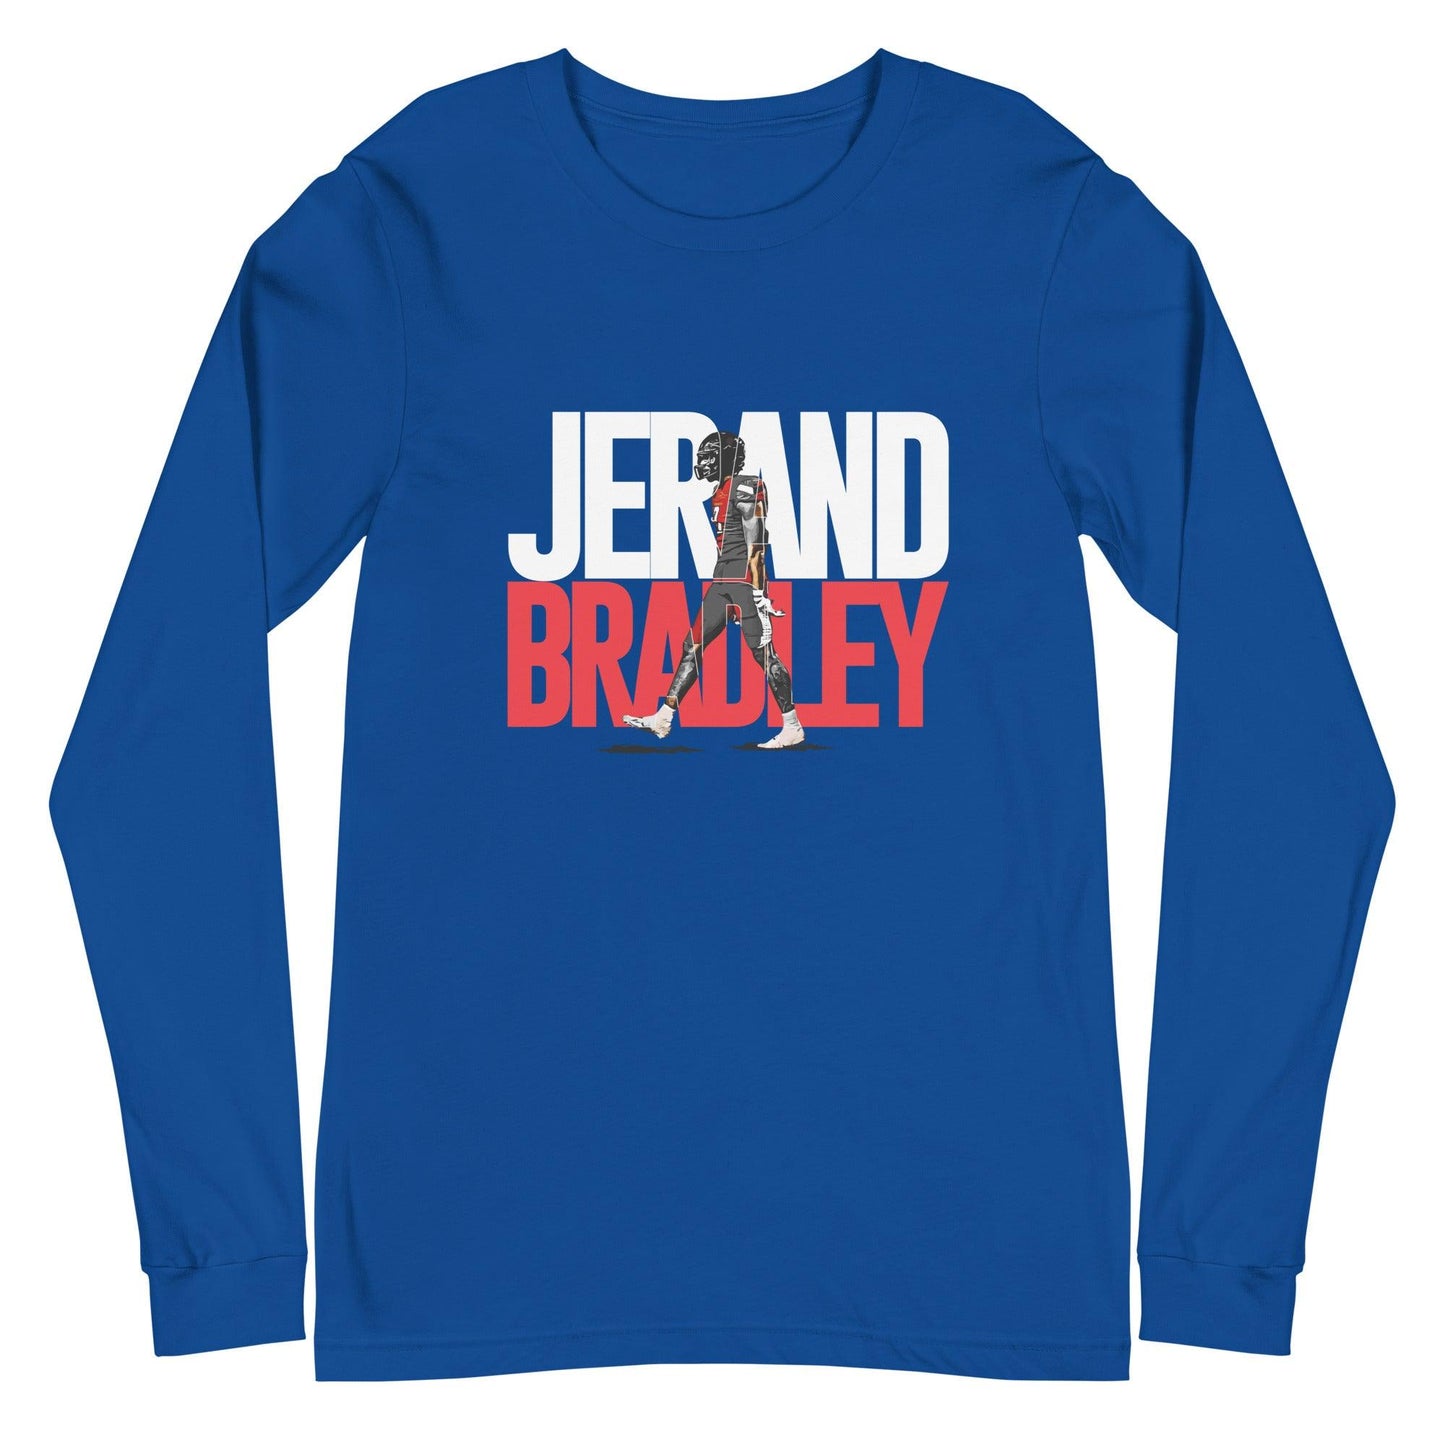 Jerand Bradley "Gameday" Long Sleeve Tee - Fan Arch